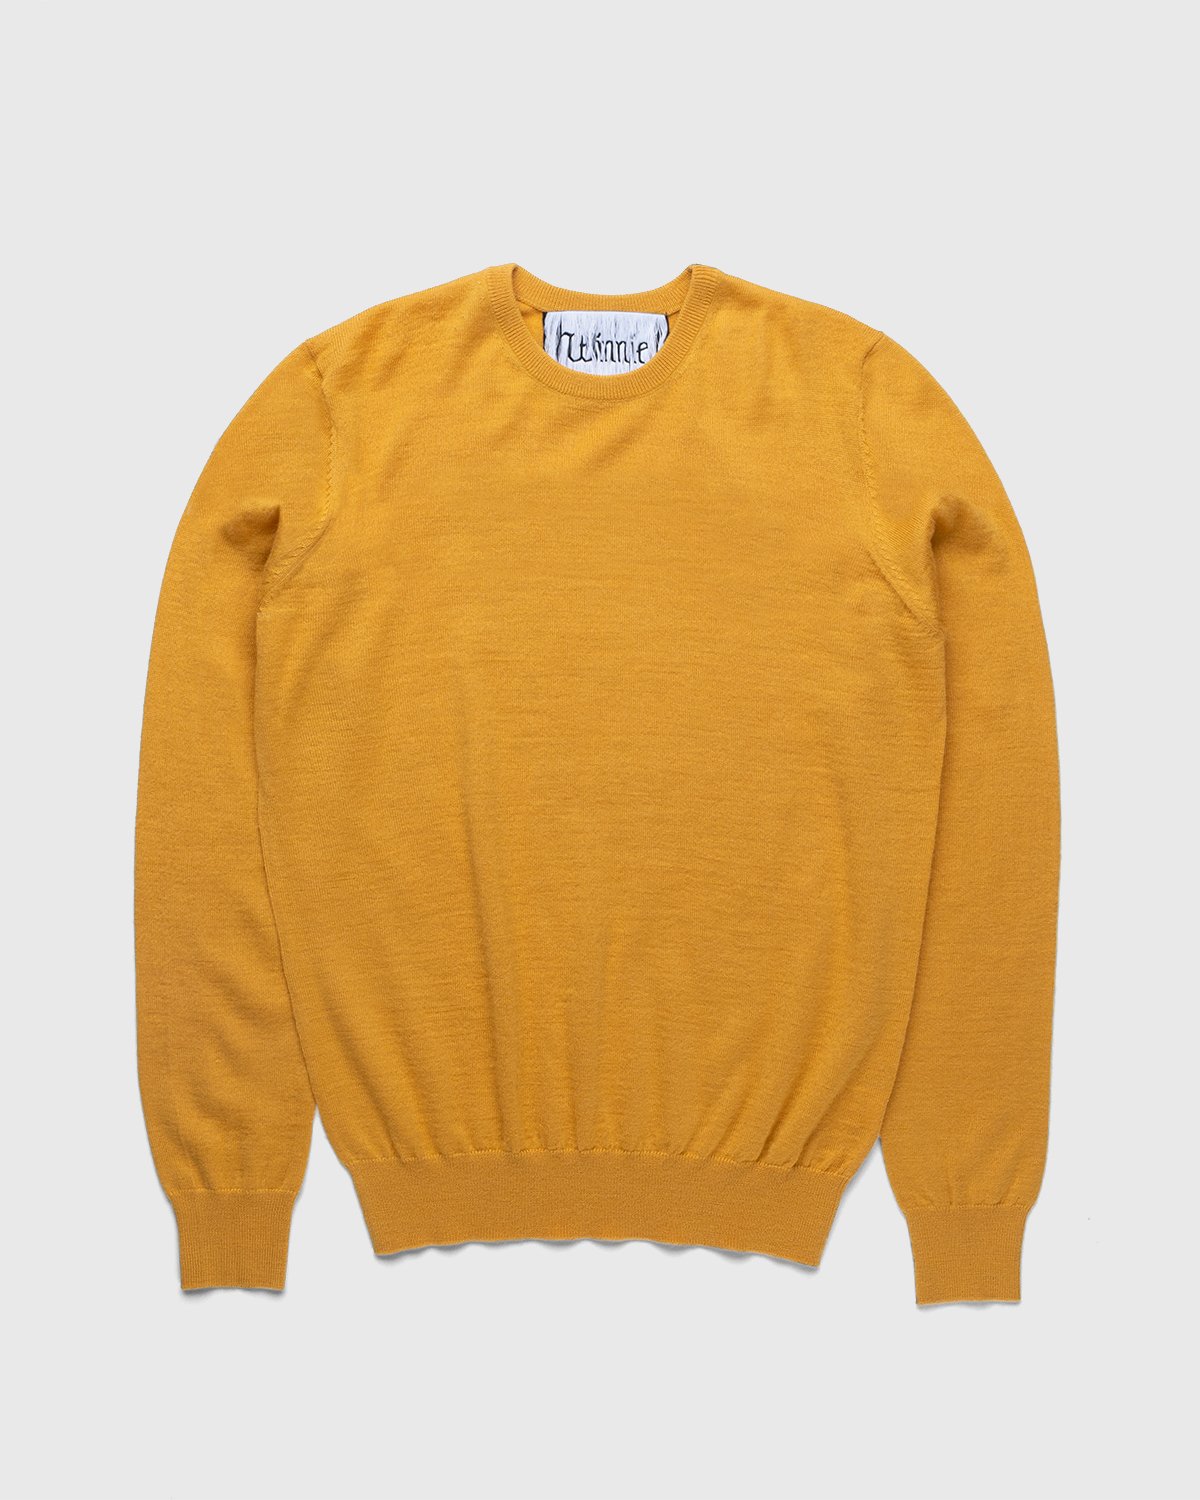 Winnie New York - Crew Sweater Mustard - Clothing - Yellow - Image 1